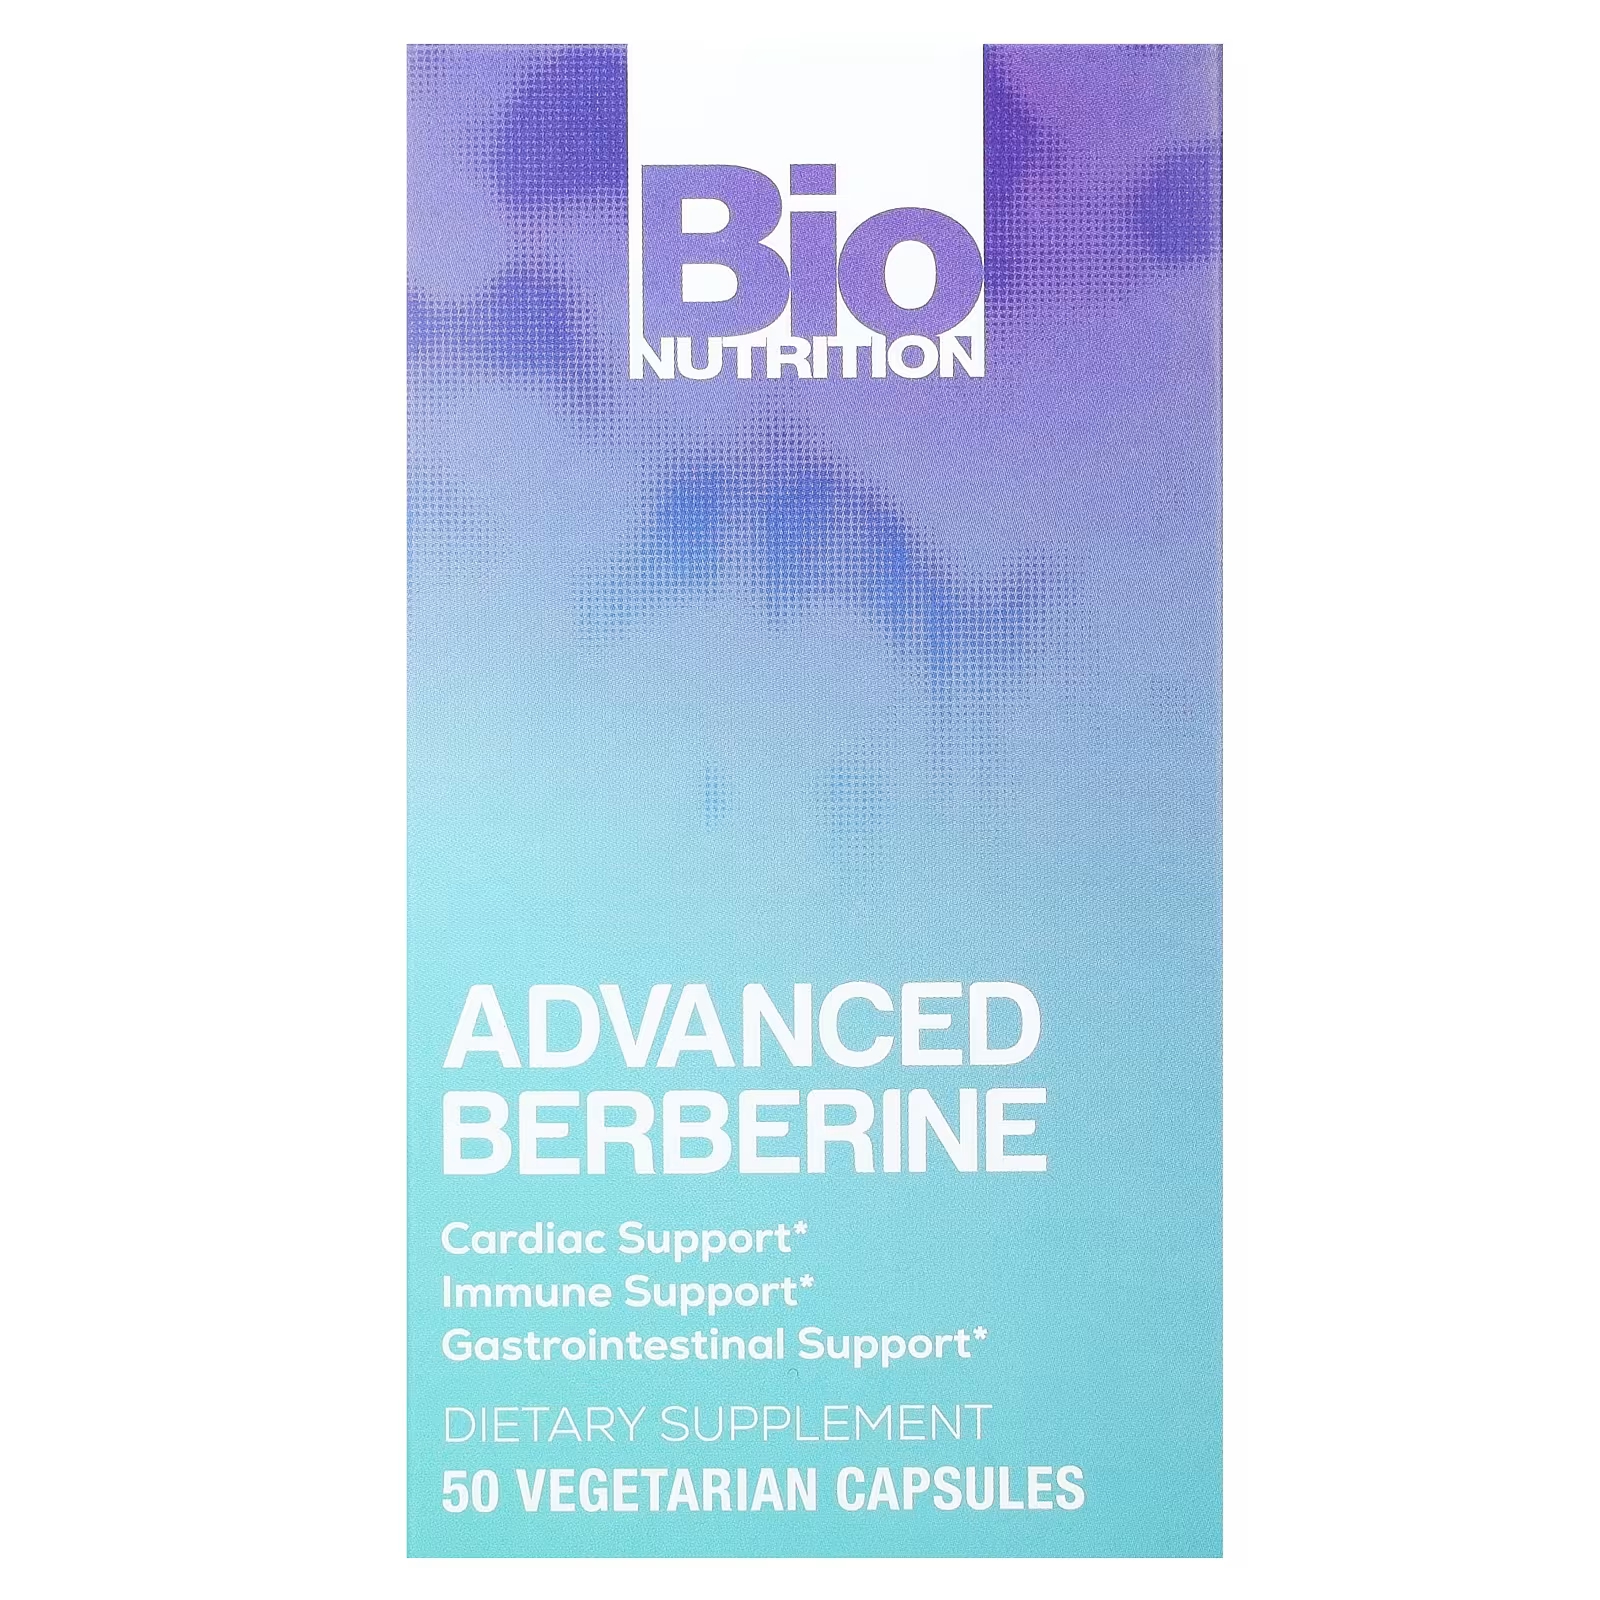 Усовершенствованный берберин, 50 вегетарианских капсул Bio Nutrition bio nutrition advanced berberine 50 вегетарианских капсул